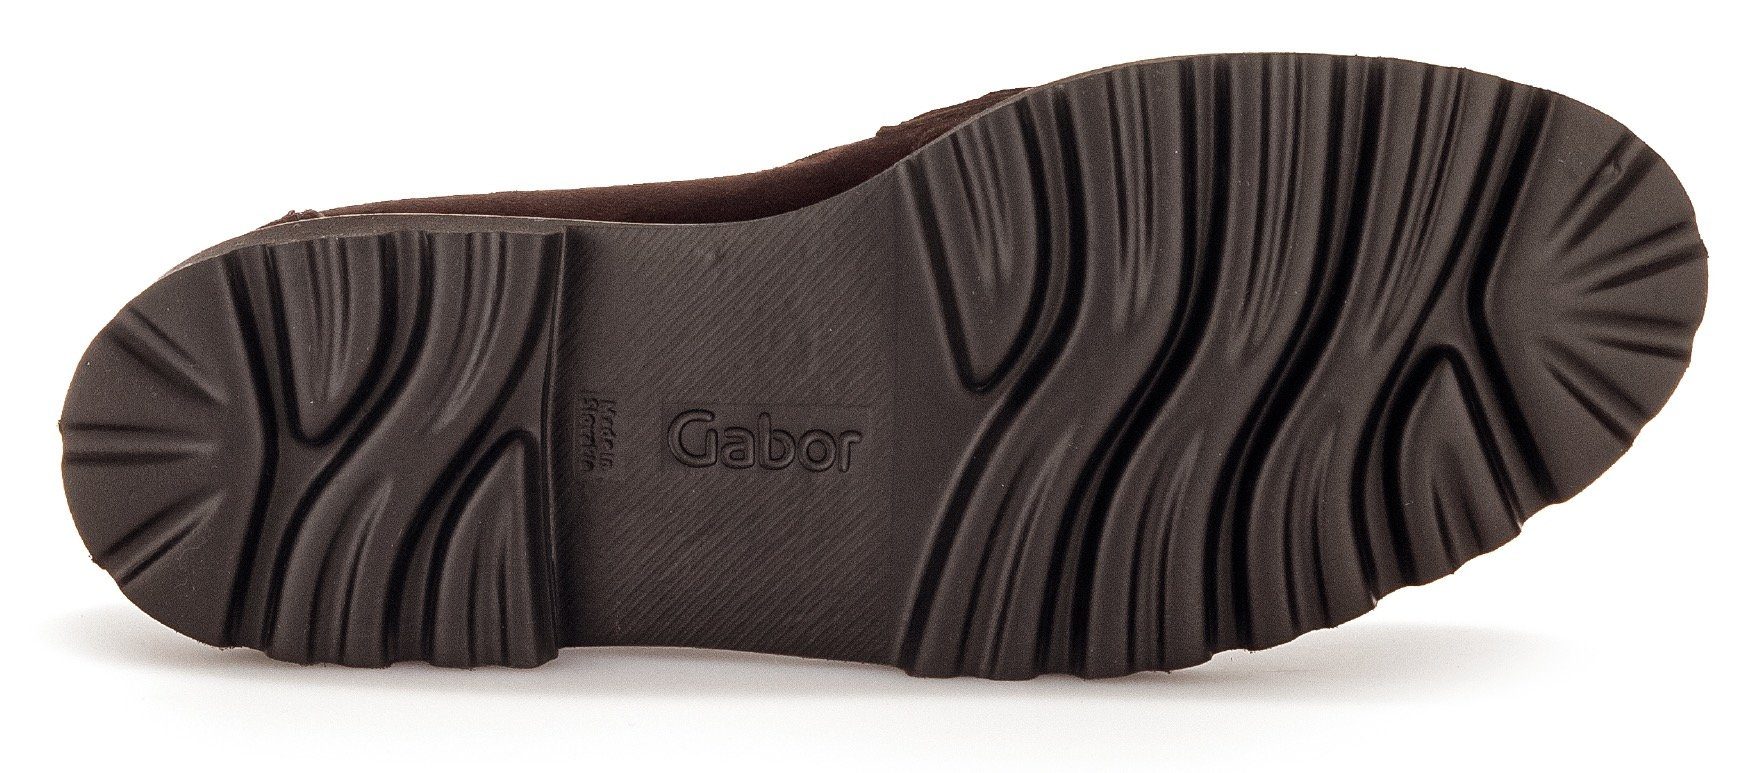 Slipper Gabor mit dunkelbraun-goldfarben Fitting-Ausstattung Best